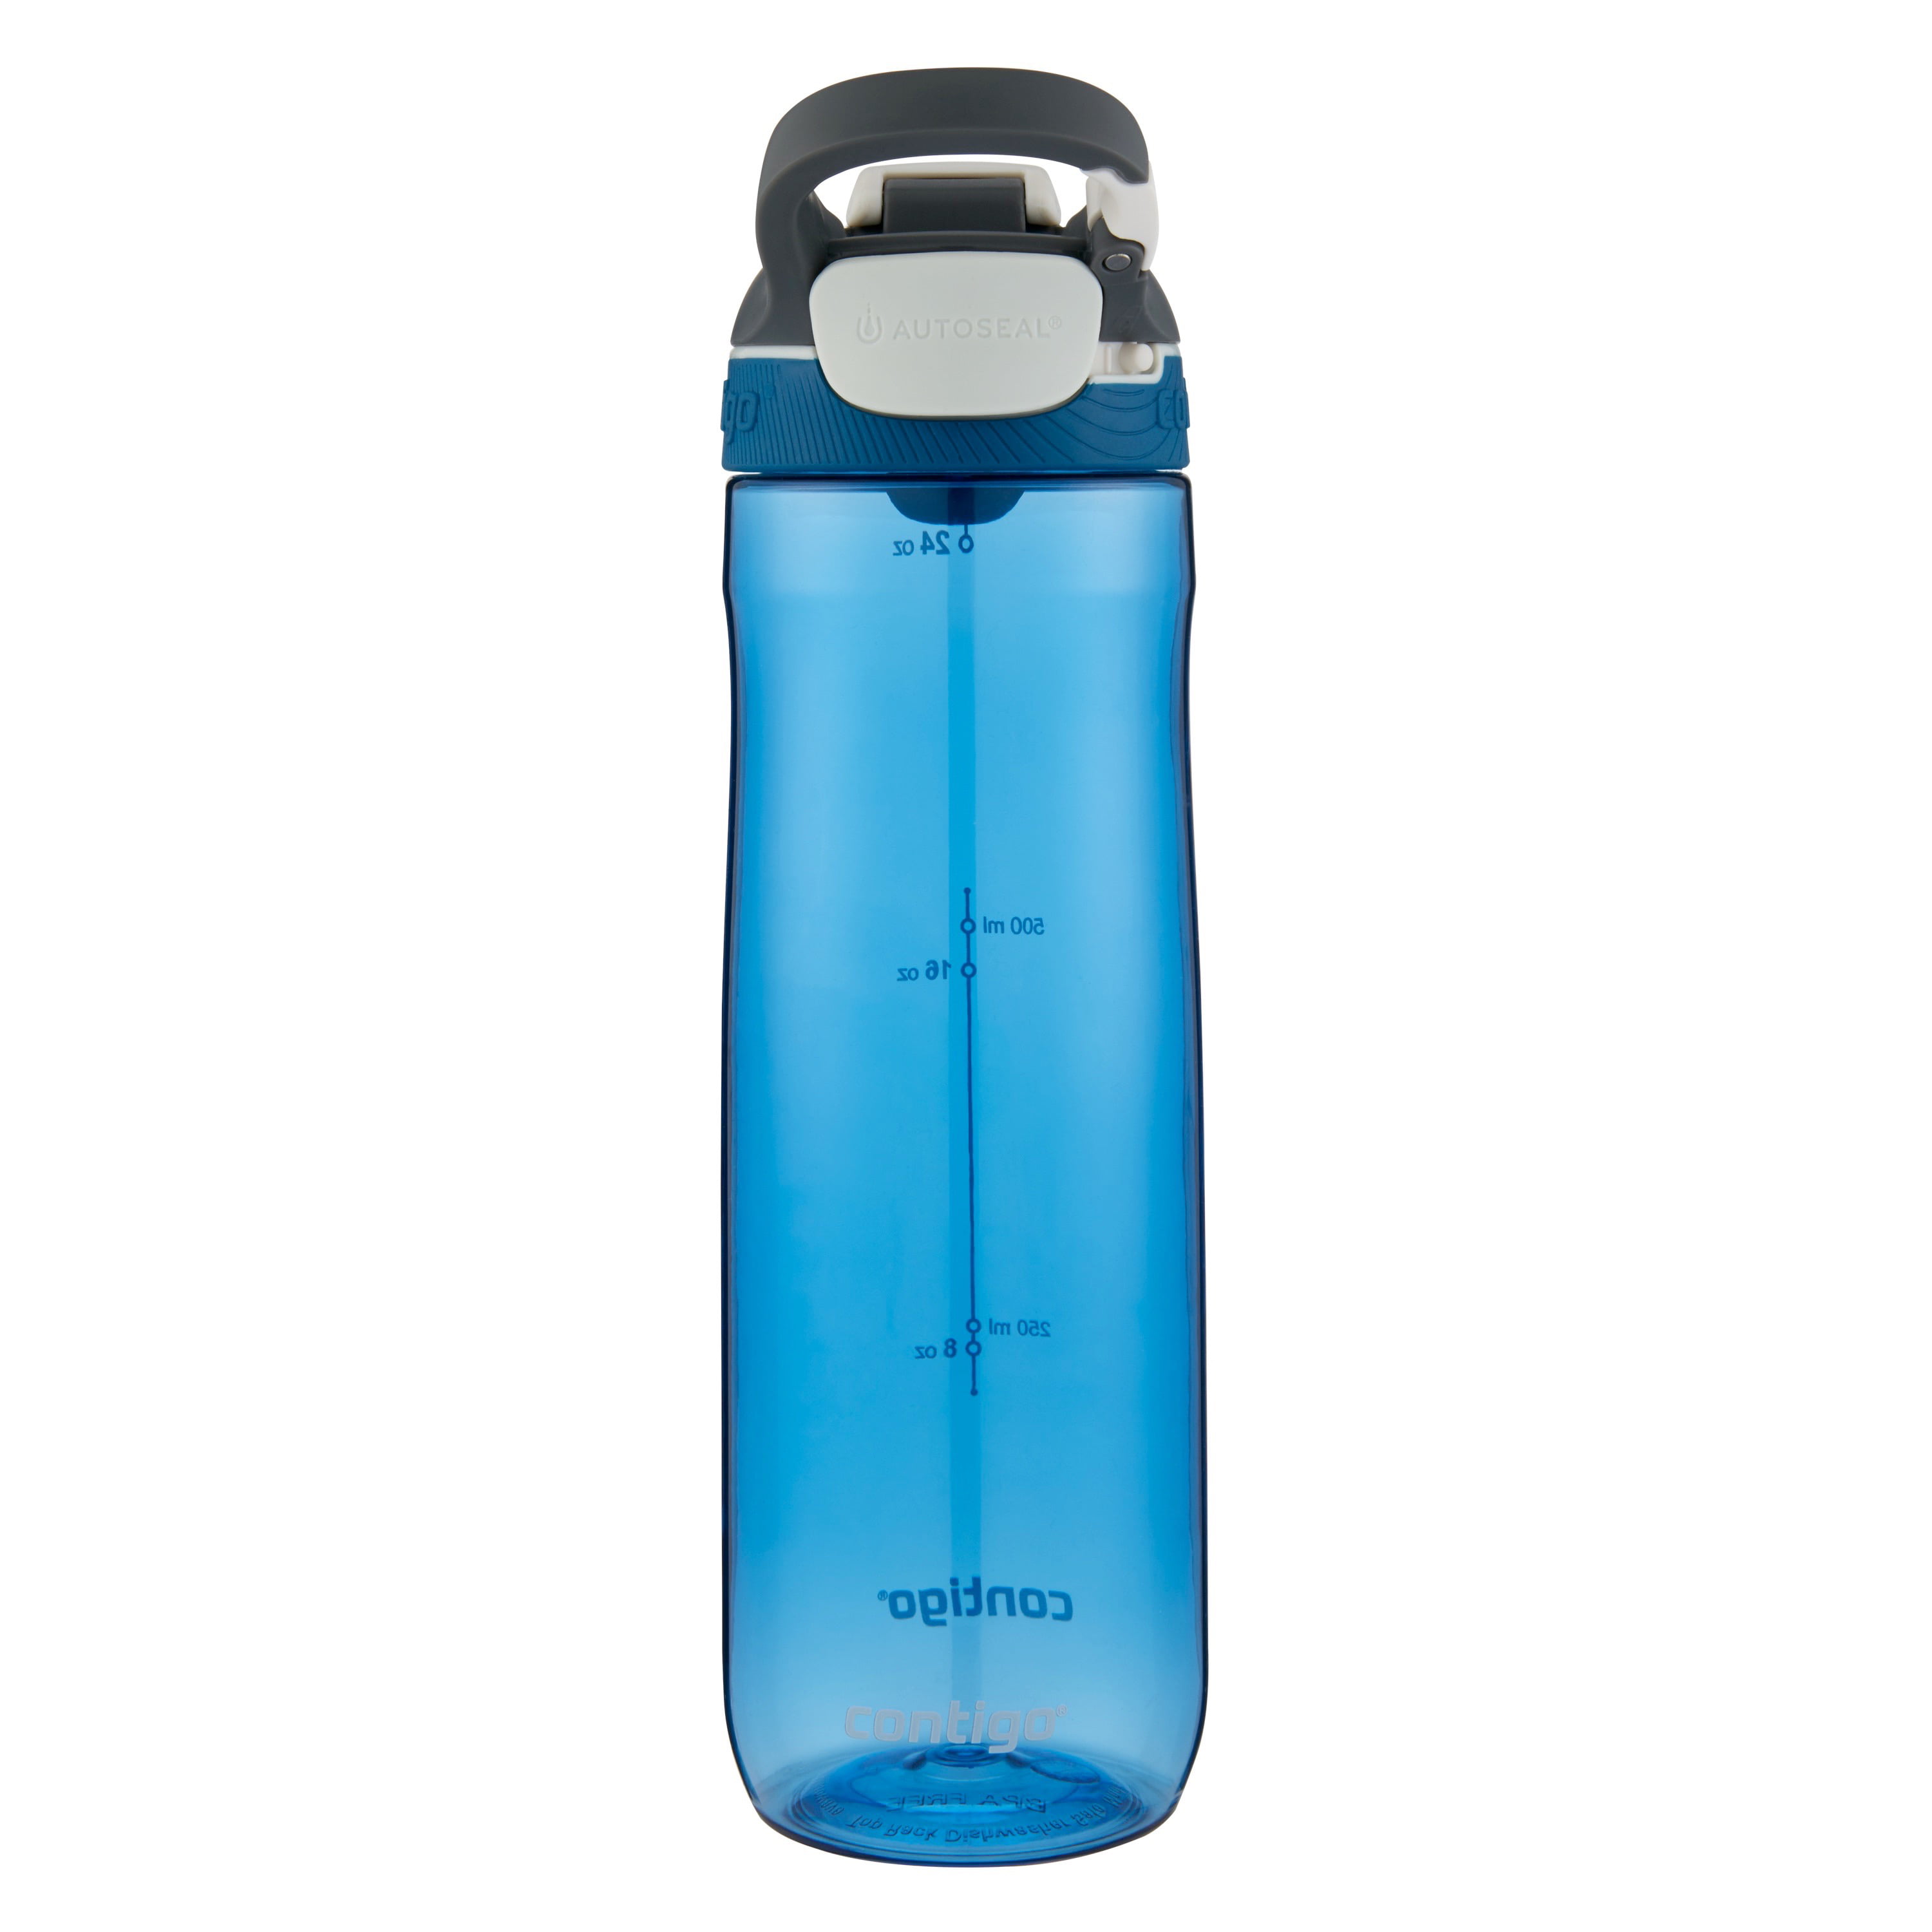 Contigo 32 oz Cortland Autoseal Water Bottle - Smoke 